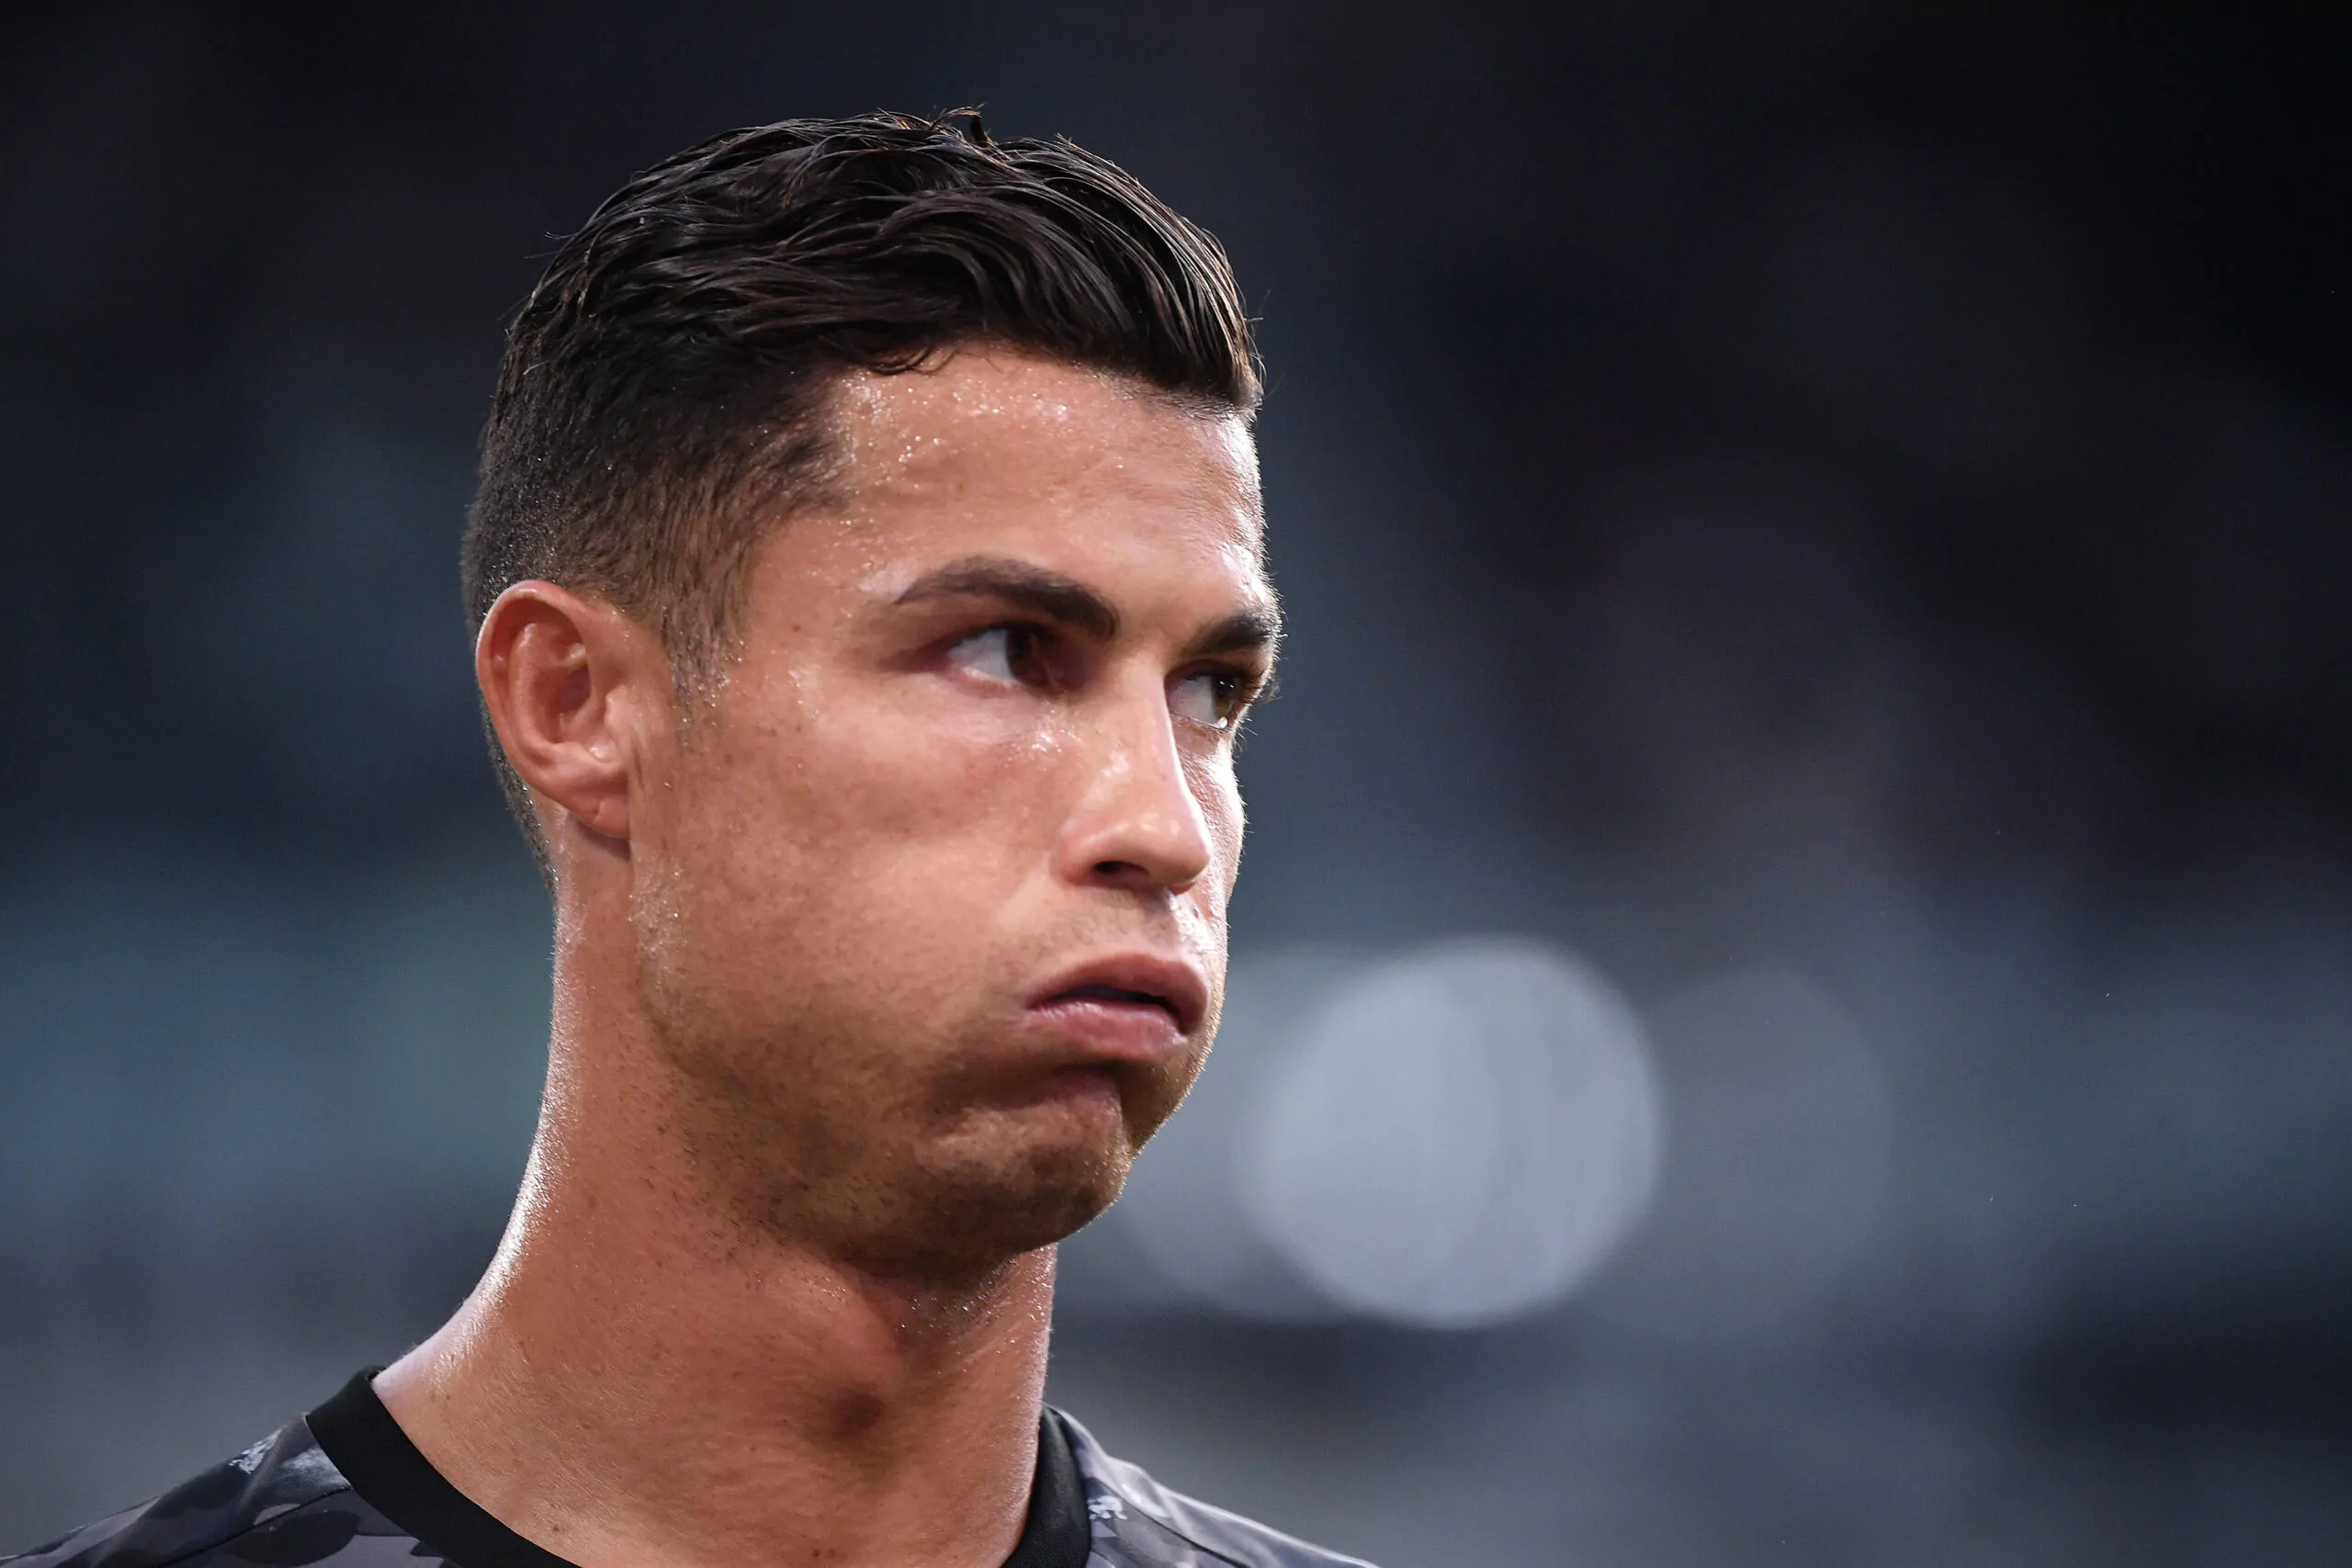 Ronaldo lascia la Juve? C’è già il nome del sostituto